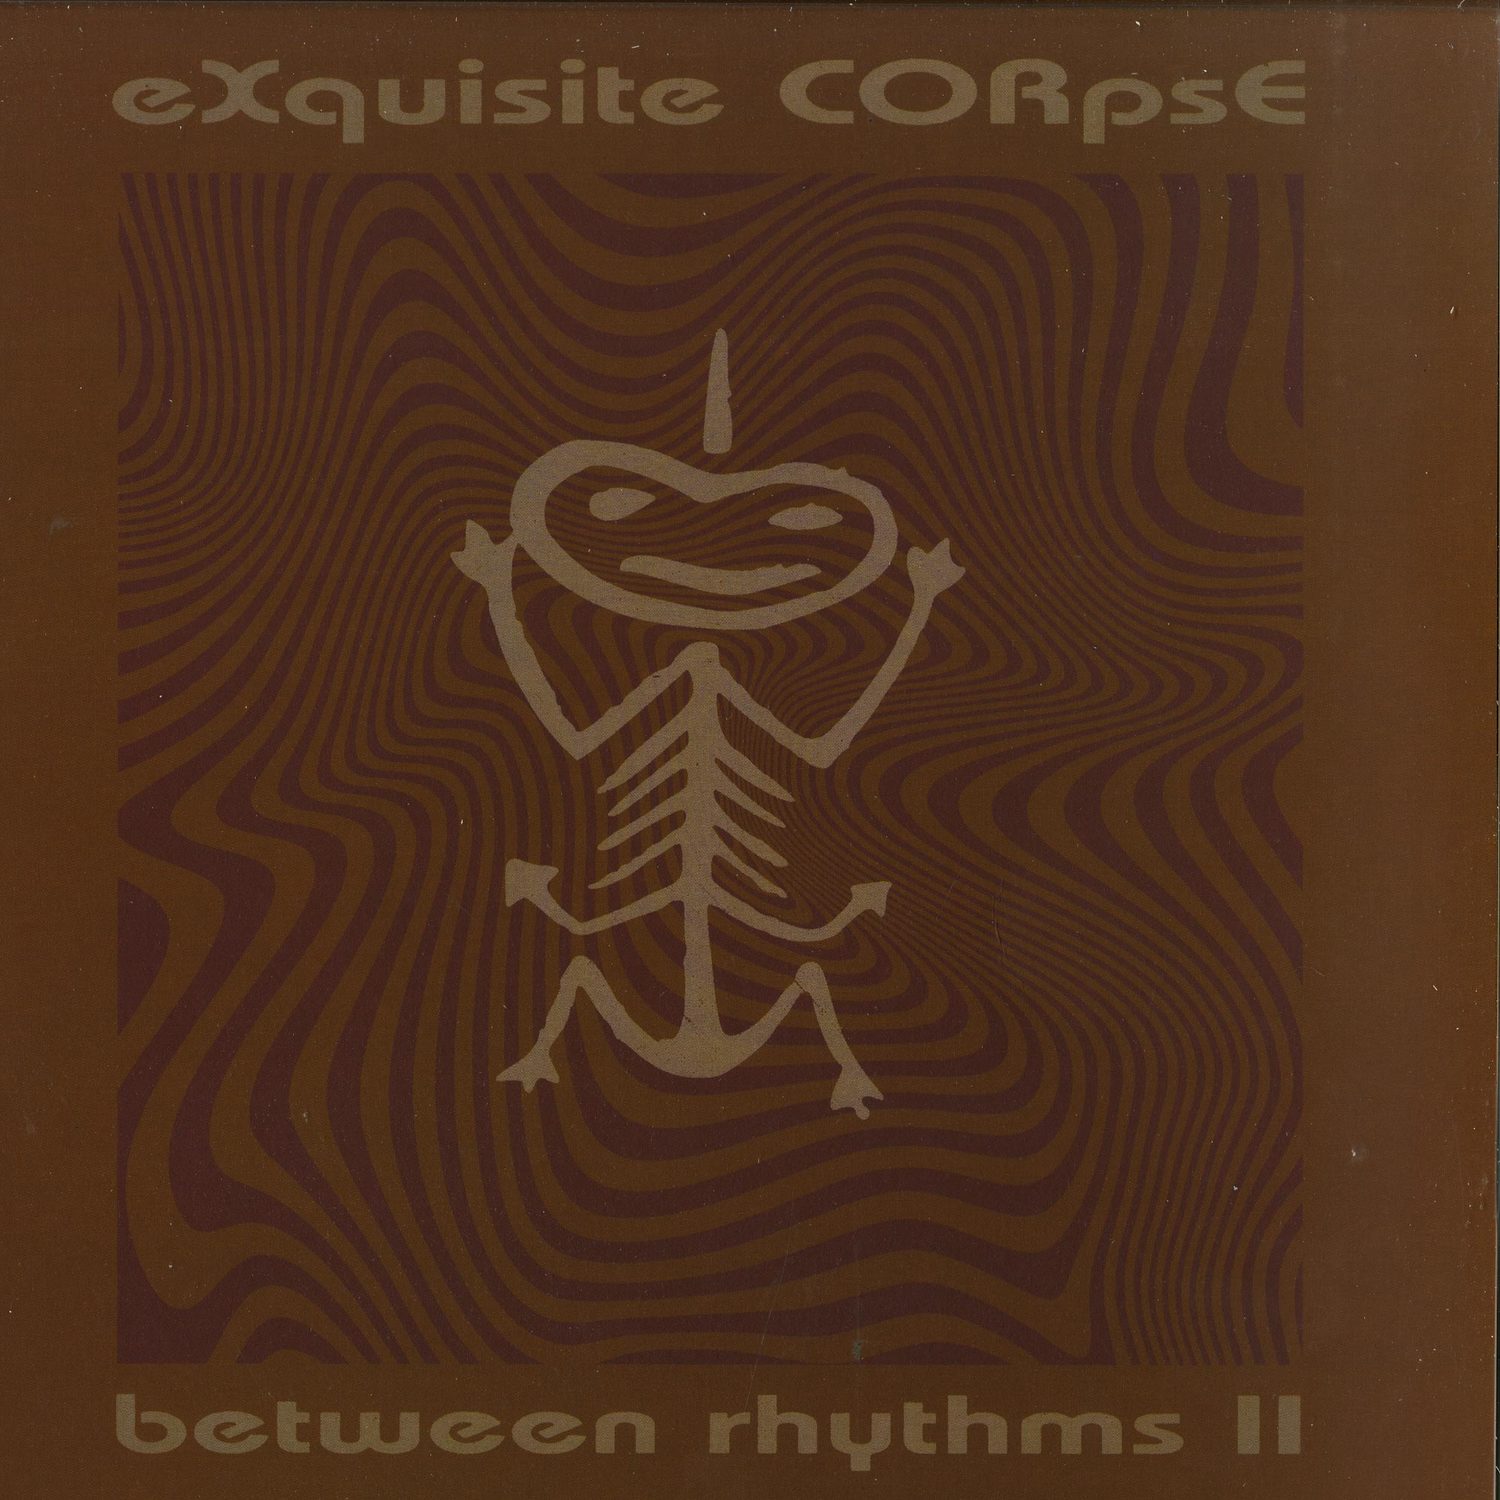 Exquisite Corpse - BETWEEN RHYTHMS II 